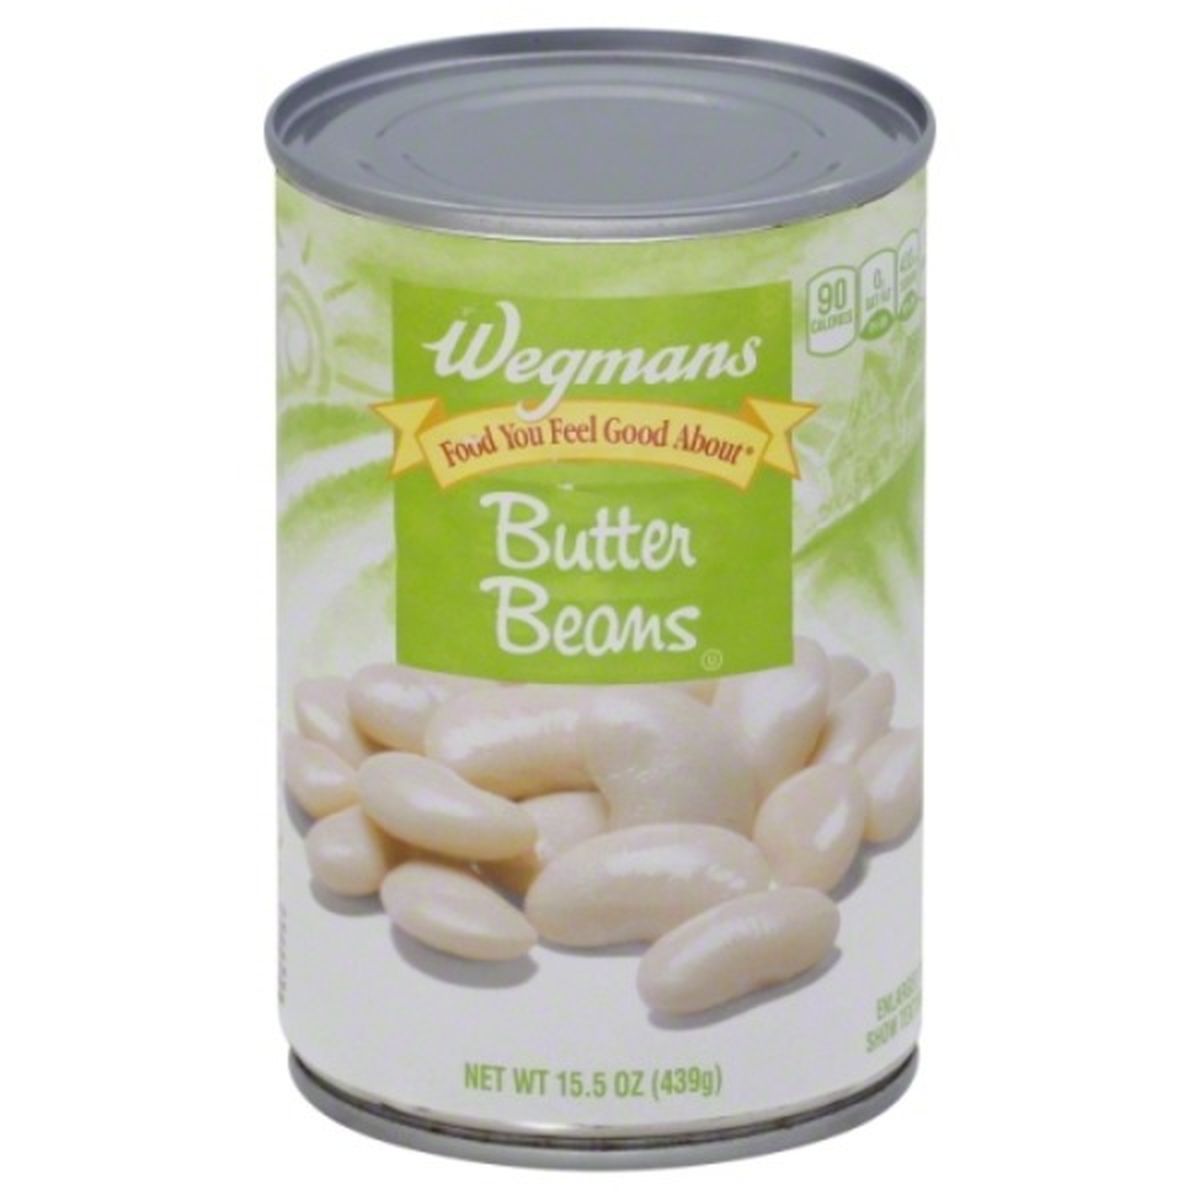 Calories in Wegmans Butter Beans